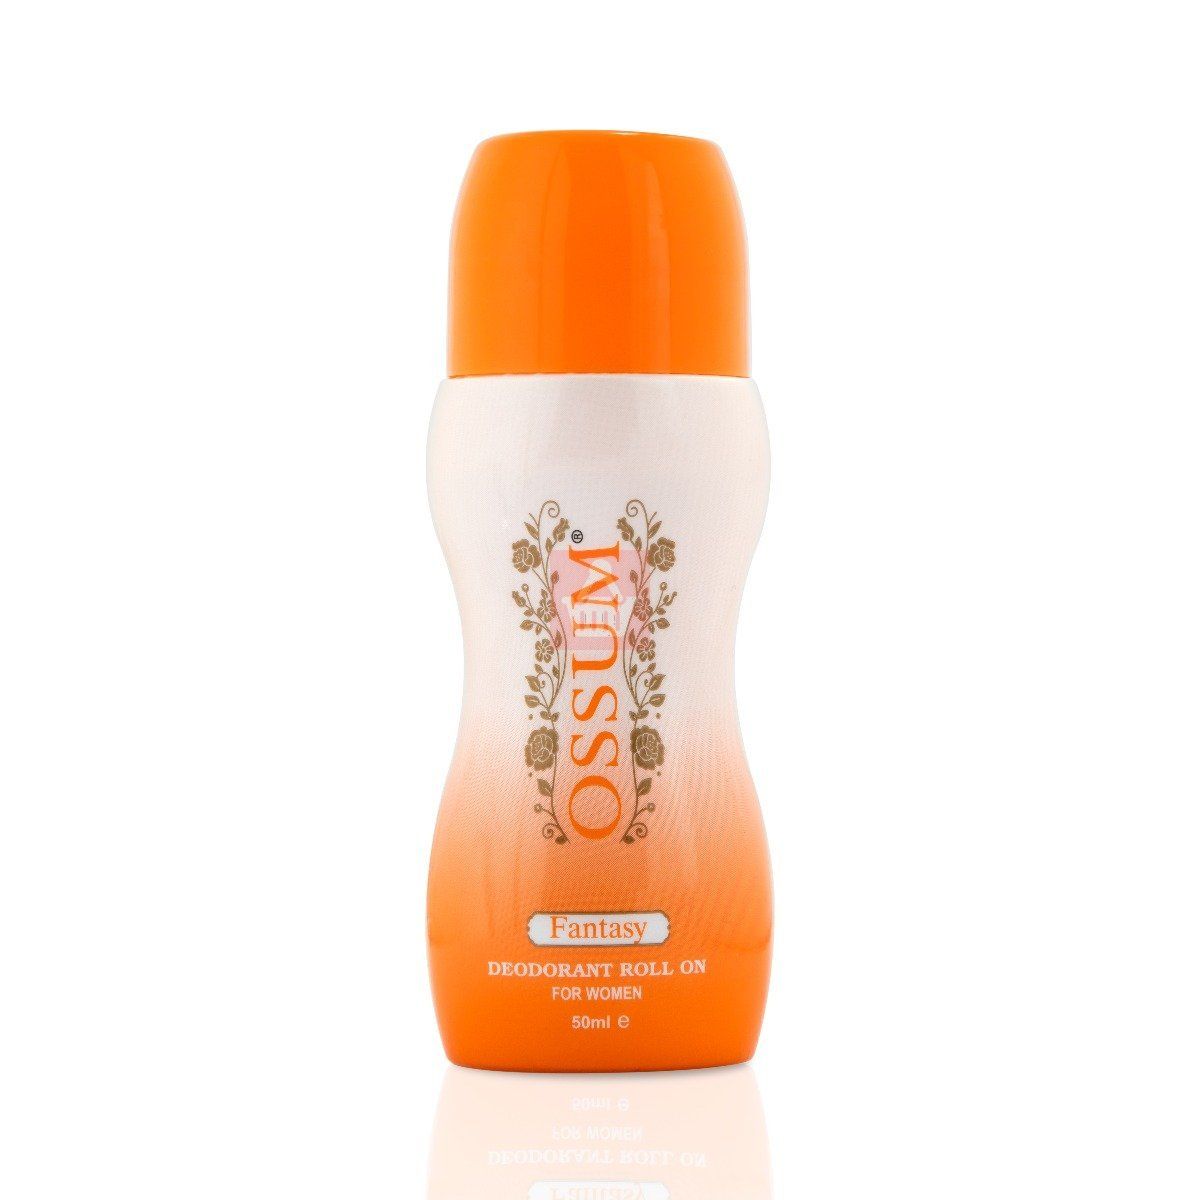 OSSUM Deodorant Roll On For Women- Fantasy 50 ml